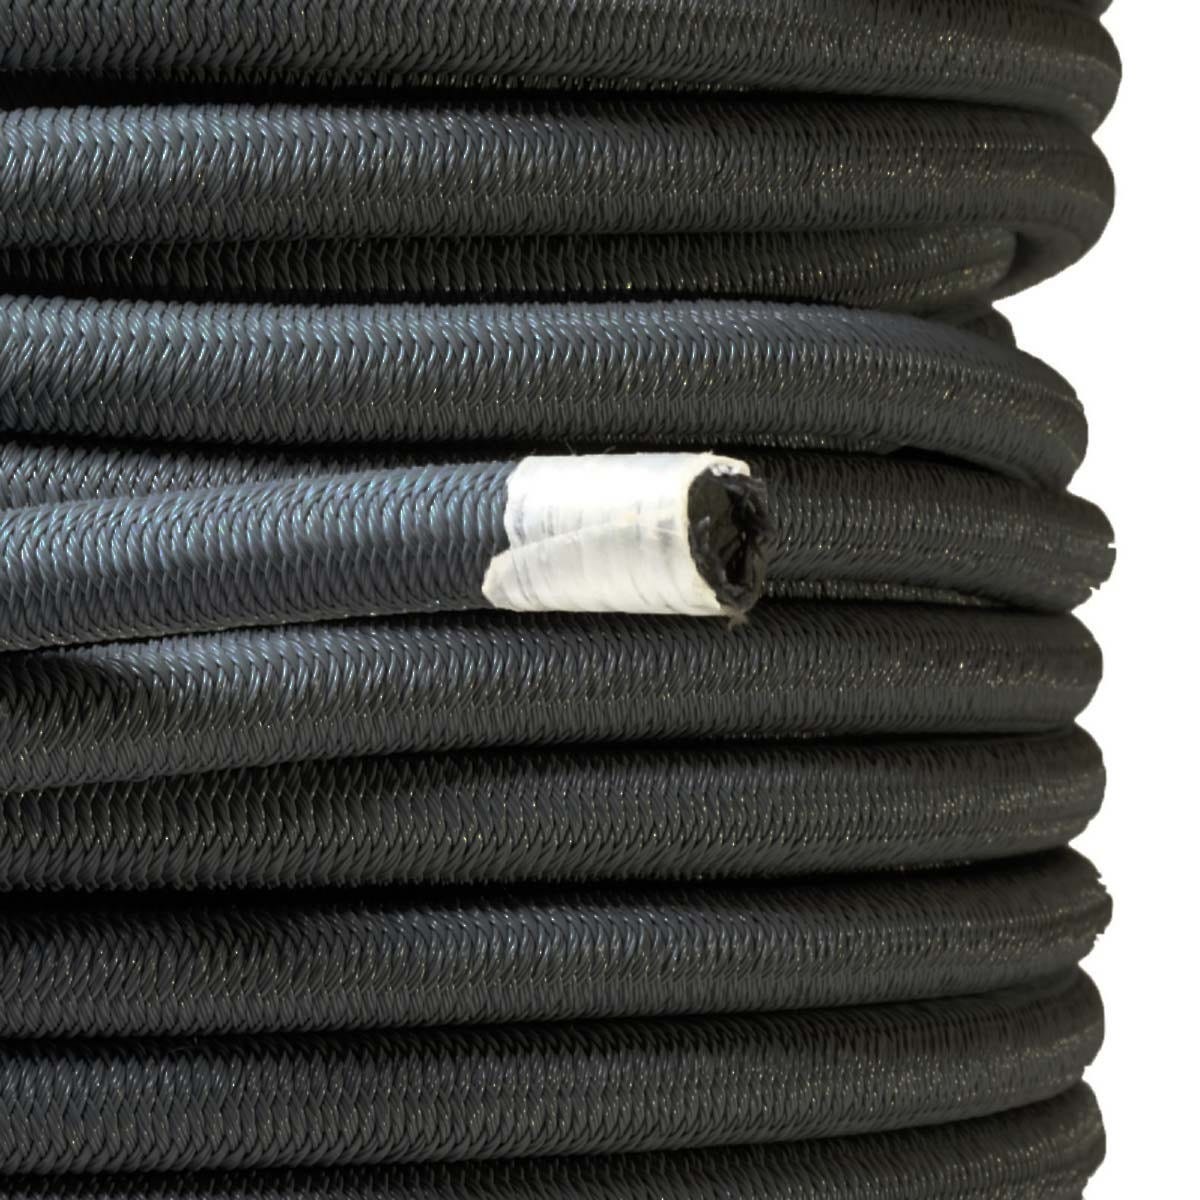 Sandow élastique Noir 15 mètres - Qualité PRO TECPLAST 9SW - Tendeur pour bâche de diamètre 9 mm 2